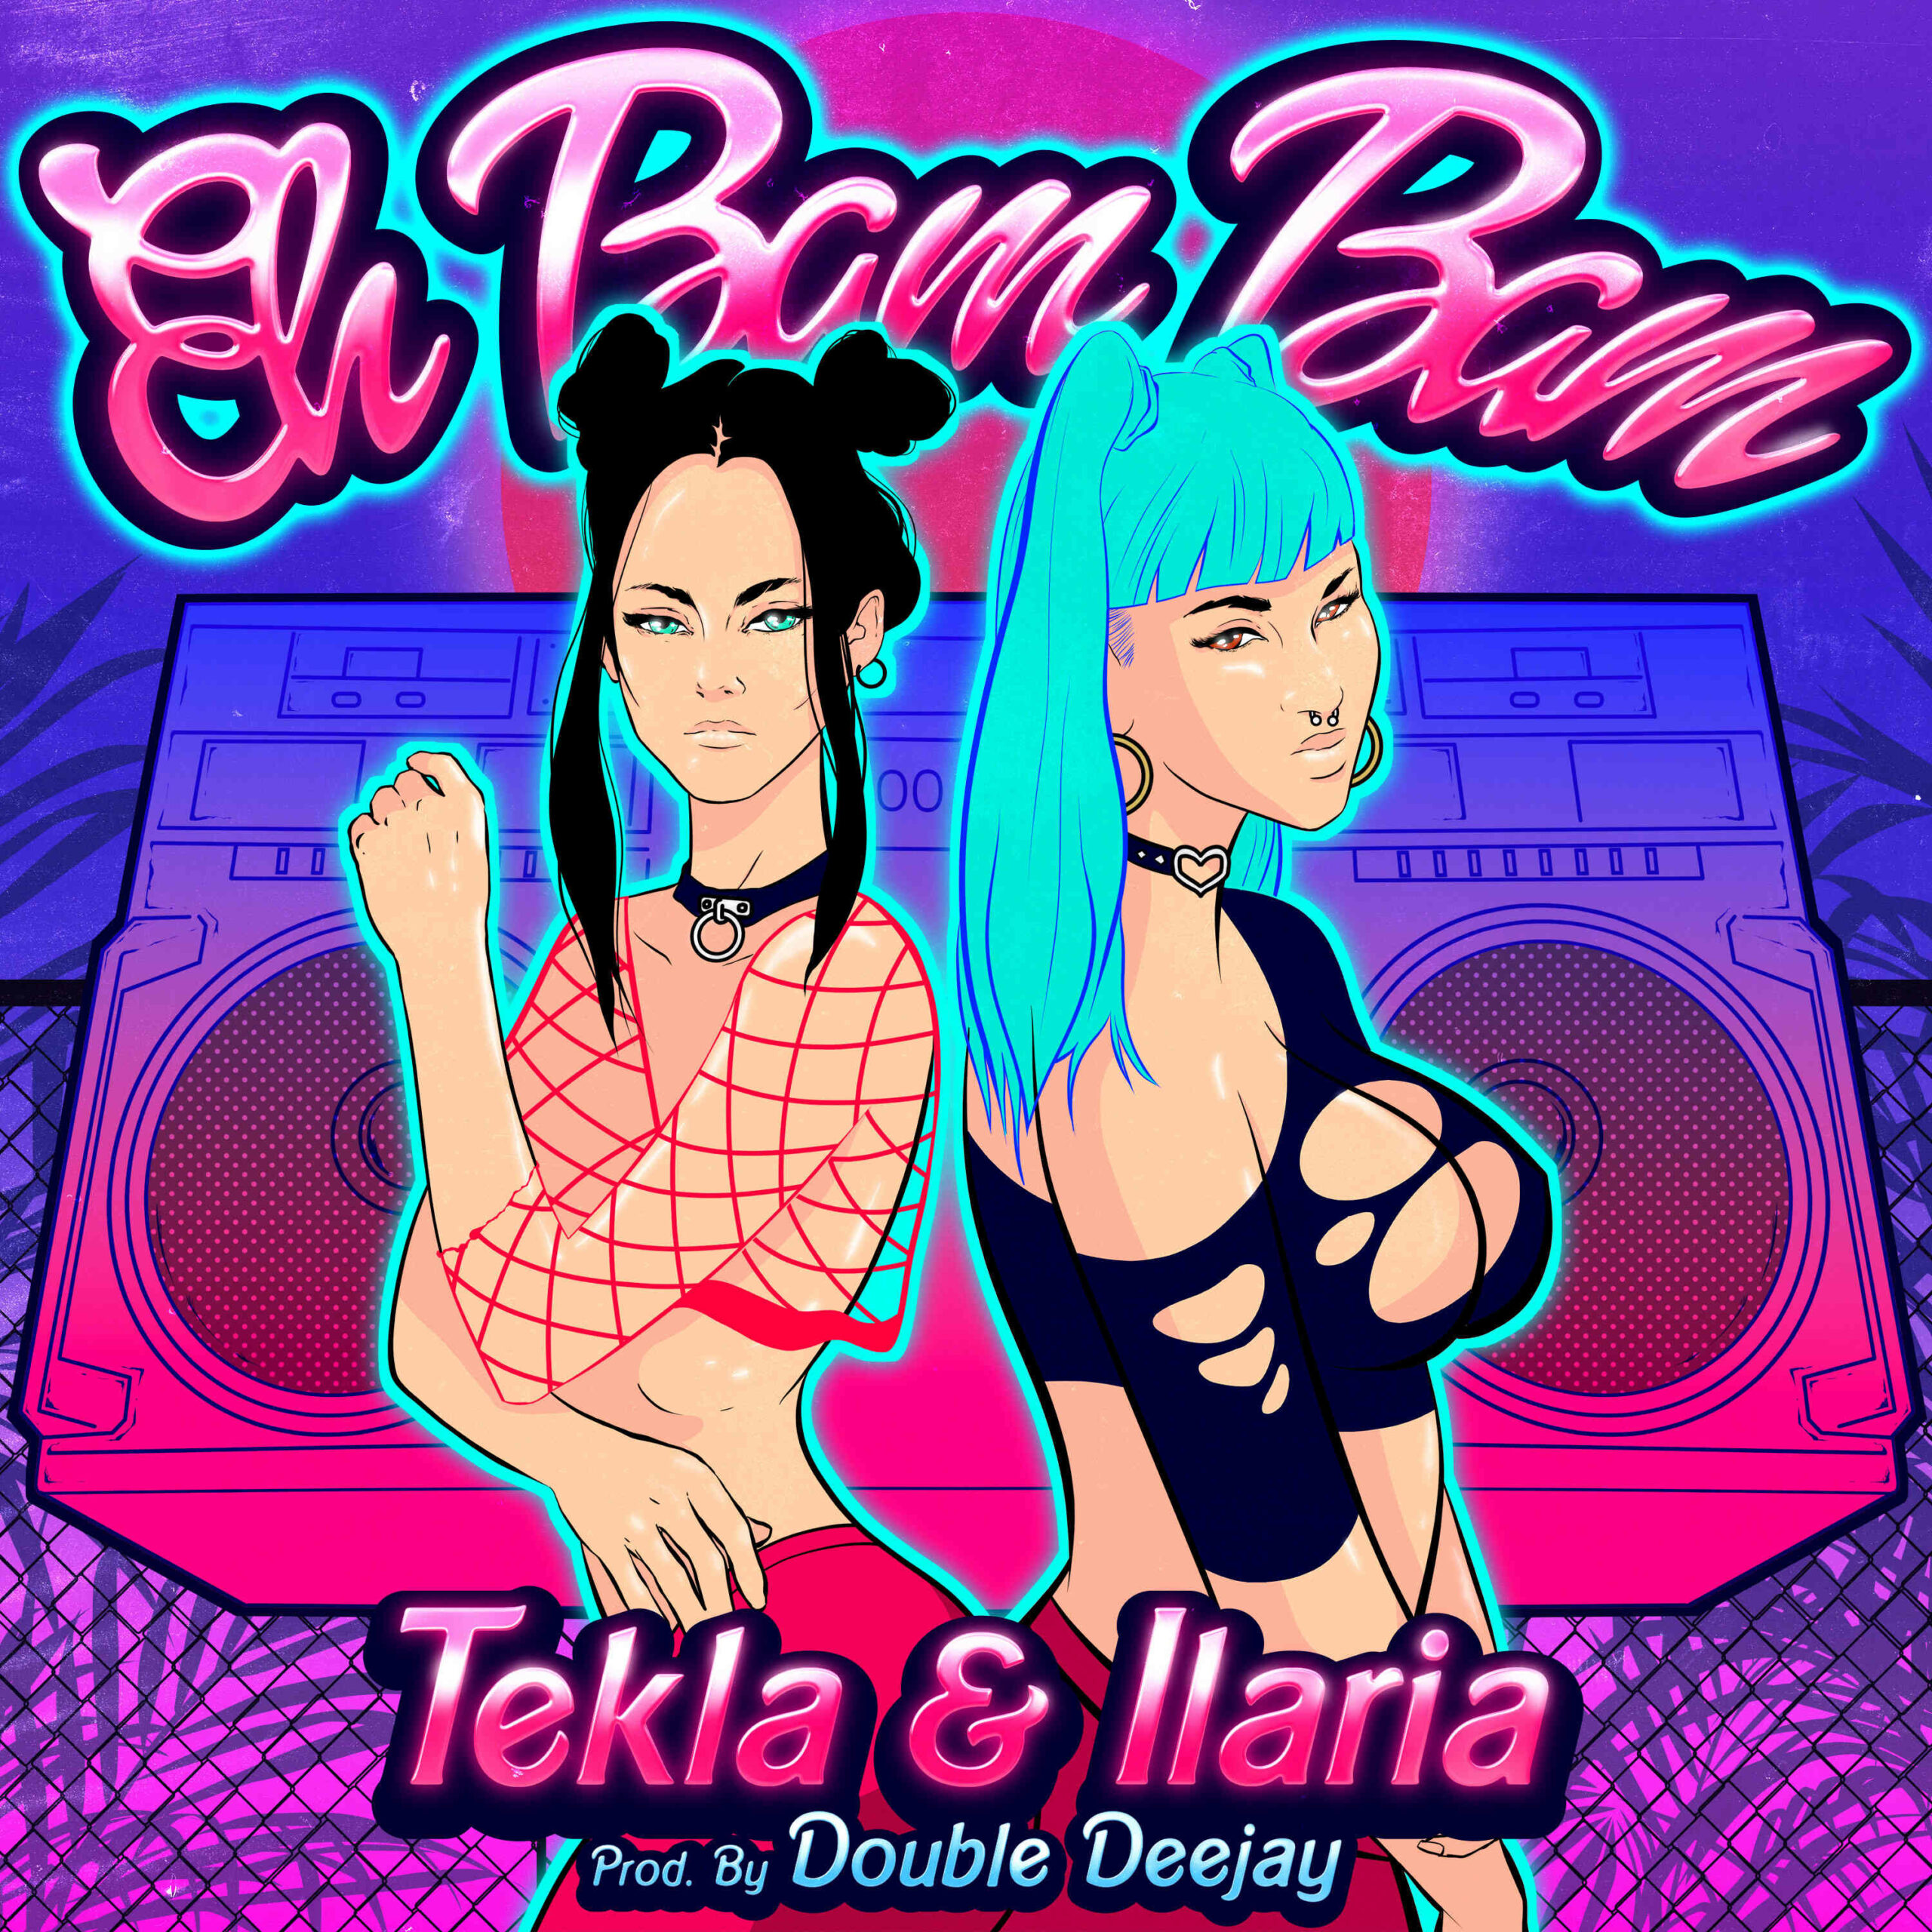 Scopri di più sull'articolo Tekla, Ilaria & Double Deejay: “Eh Bam Bam” è il nuovo singolo